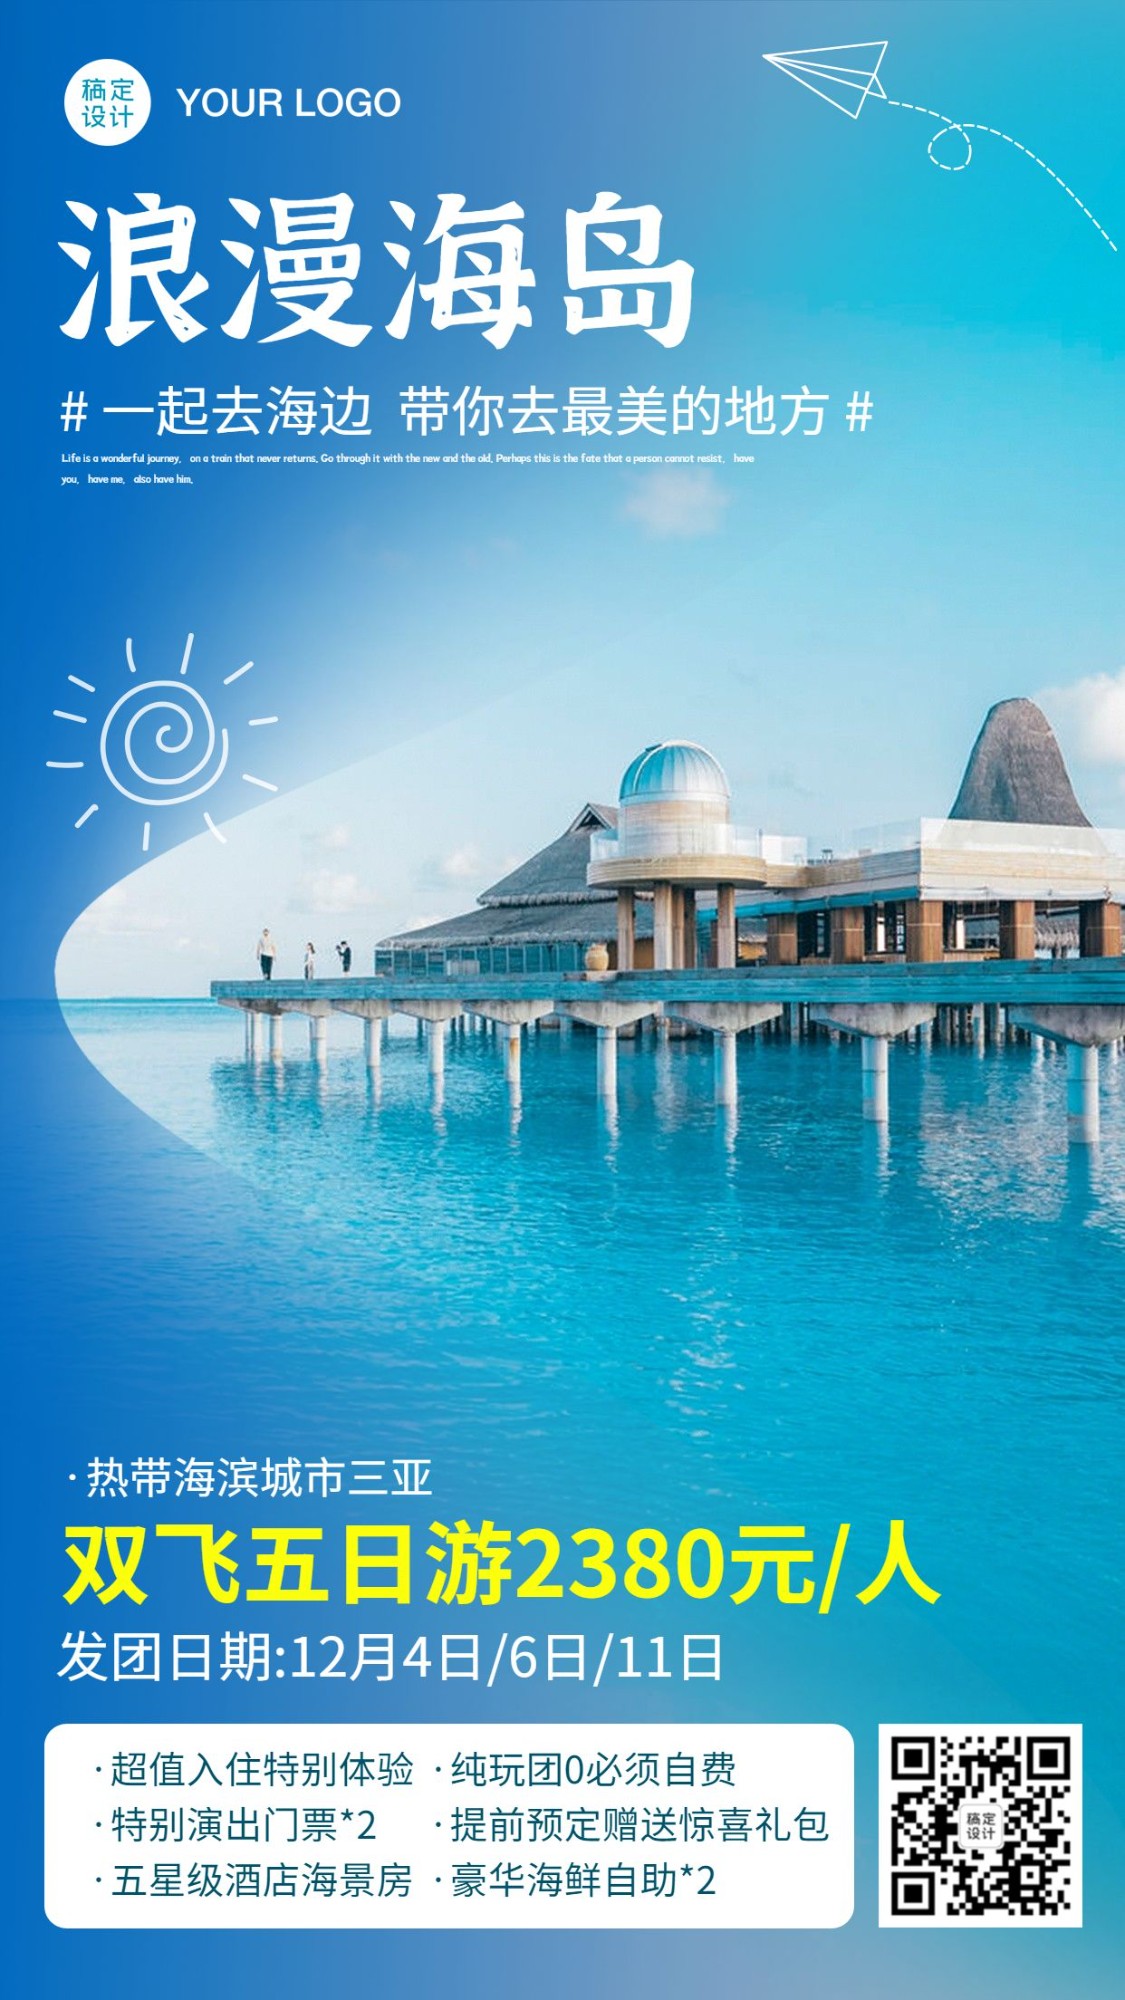 海滨海岛风情报团游旅游手机海报